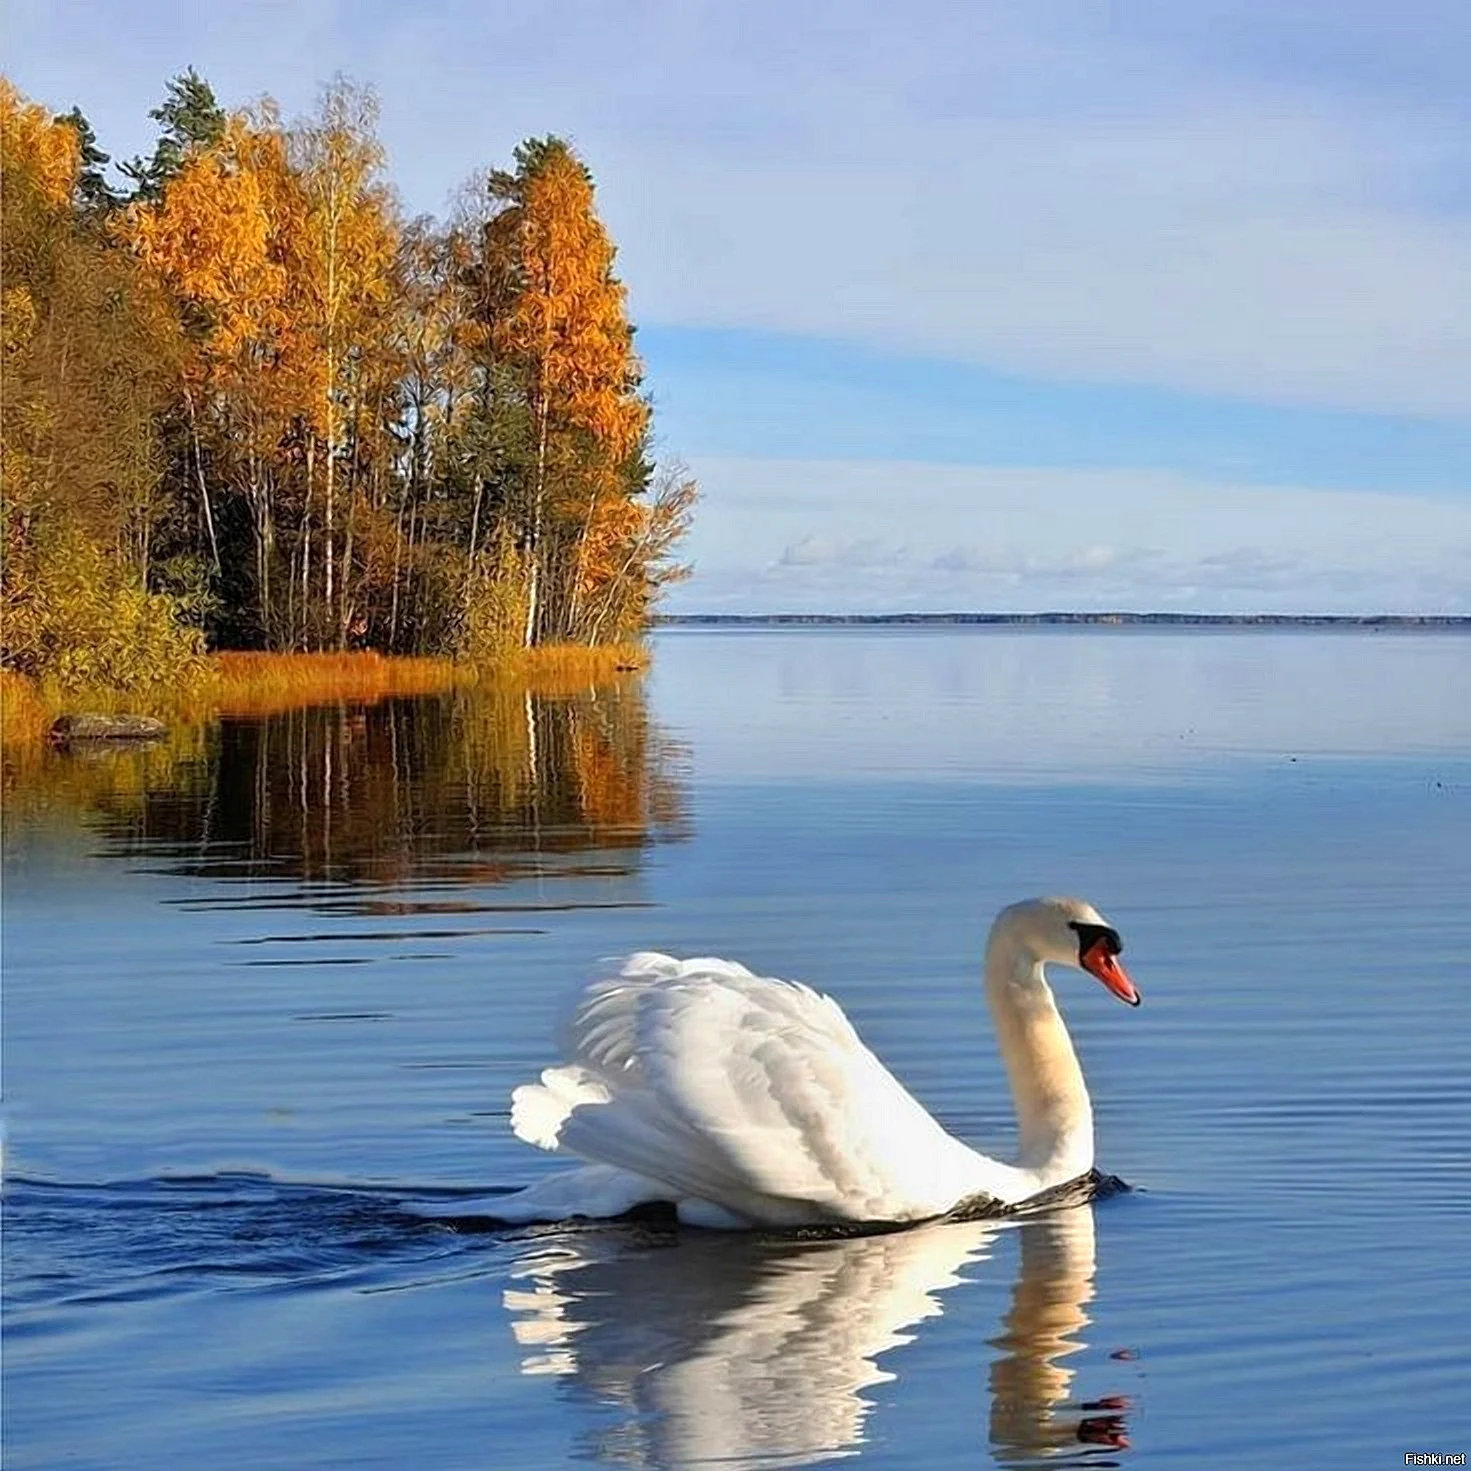 Будет озеро будут лебеди. Лебеди на озере. Лебеди в пруду. Лебедь на воде. Красивая природа с лебедями.